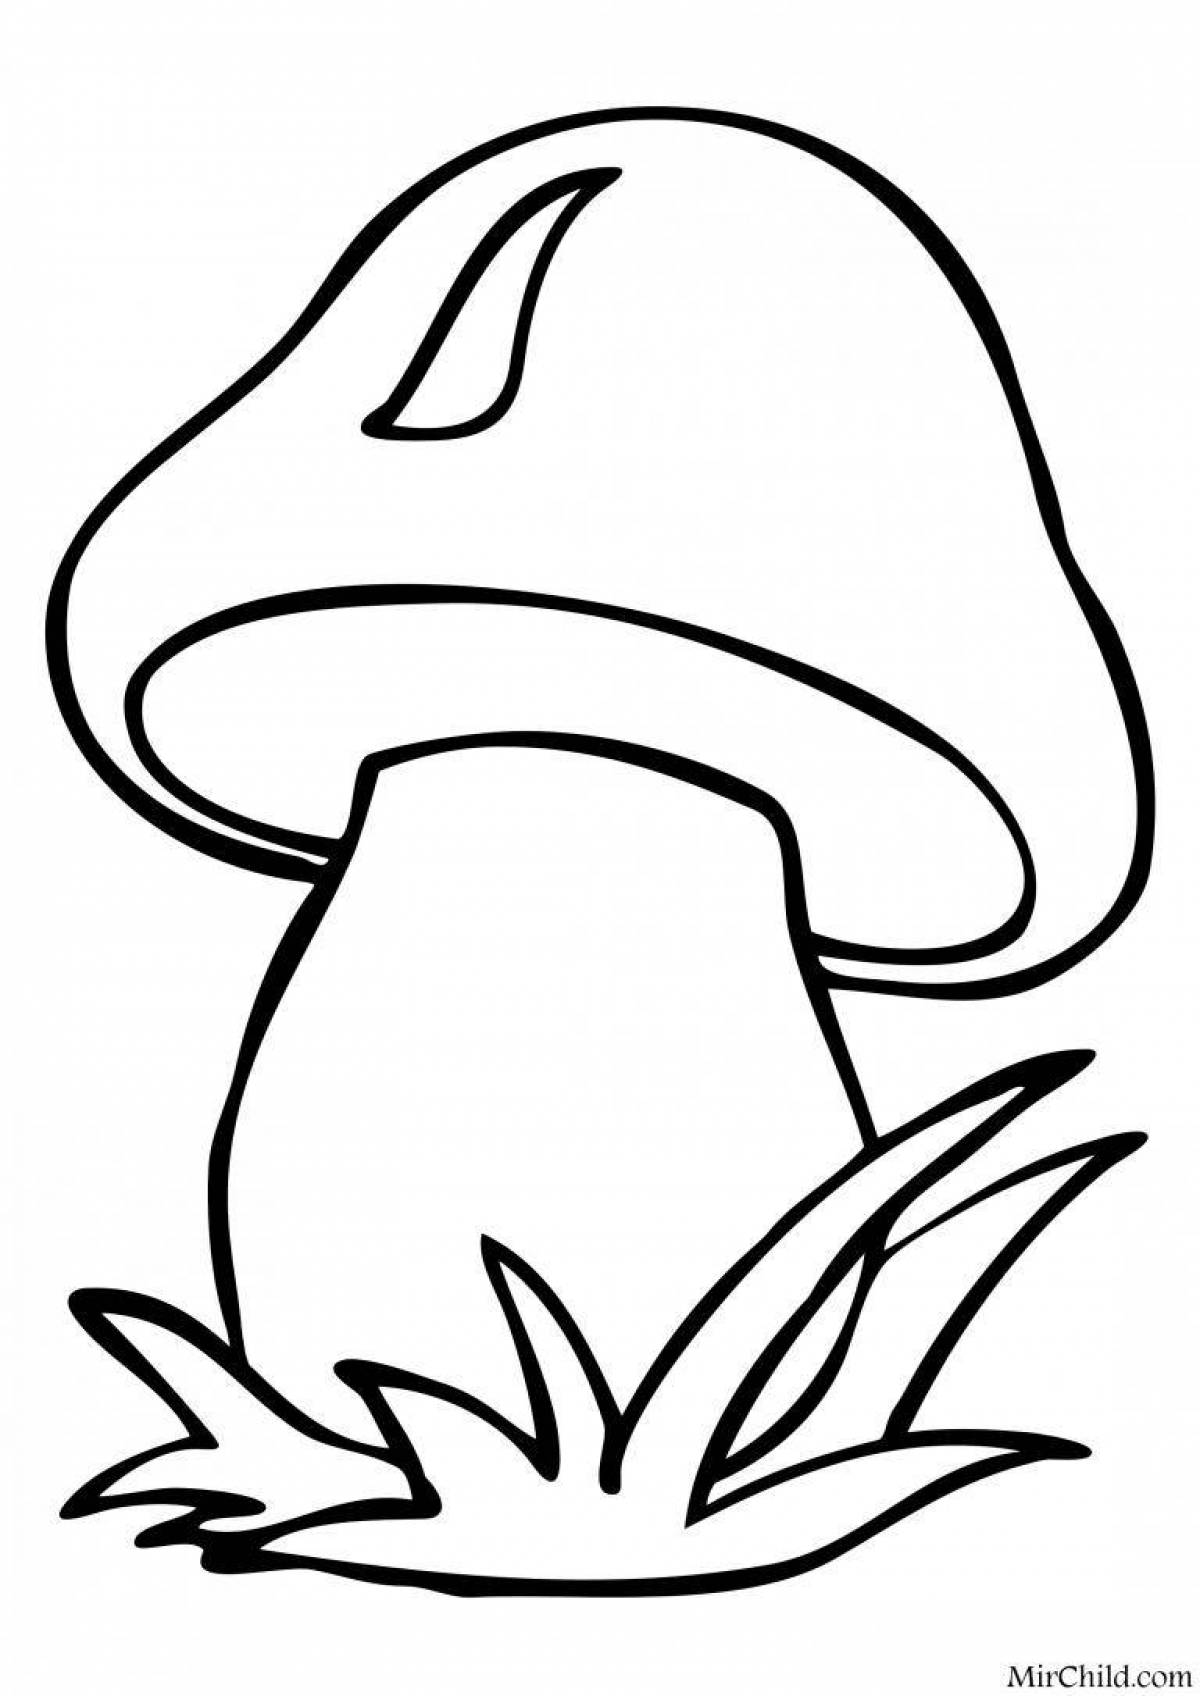 Sweet mushrooms coloring book for kids